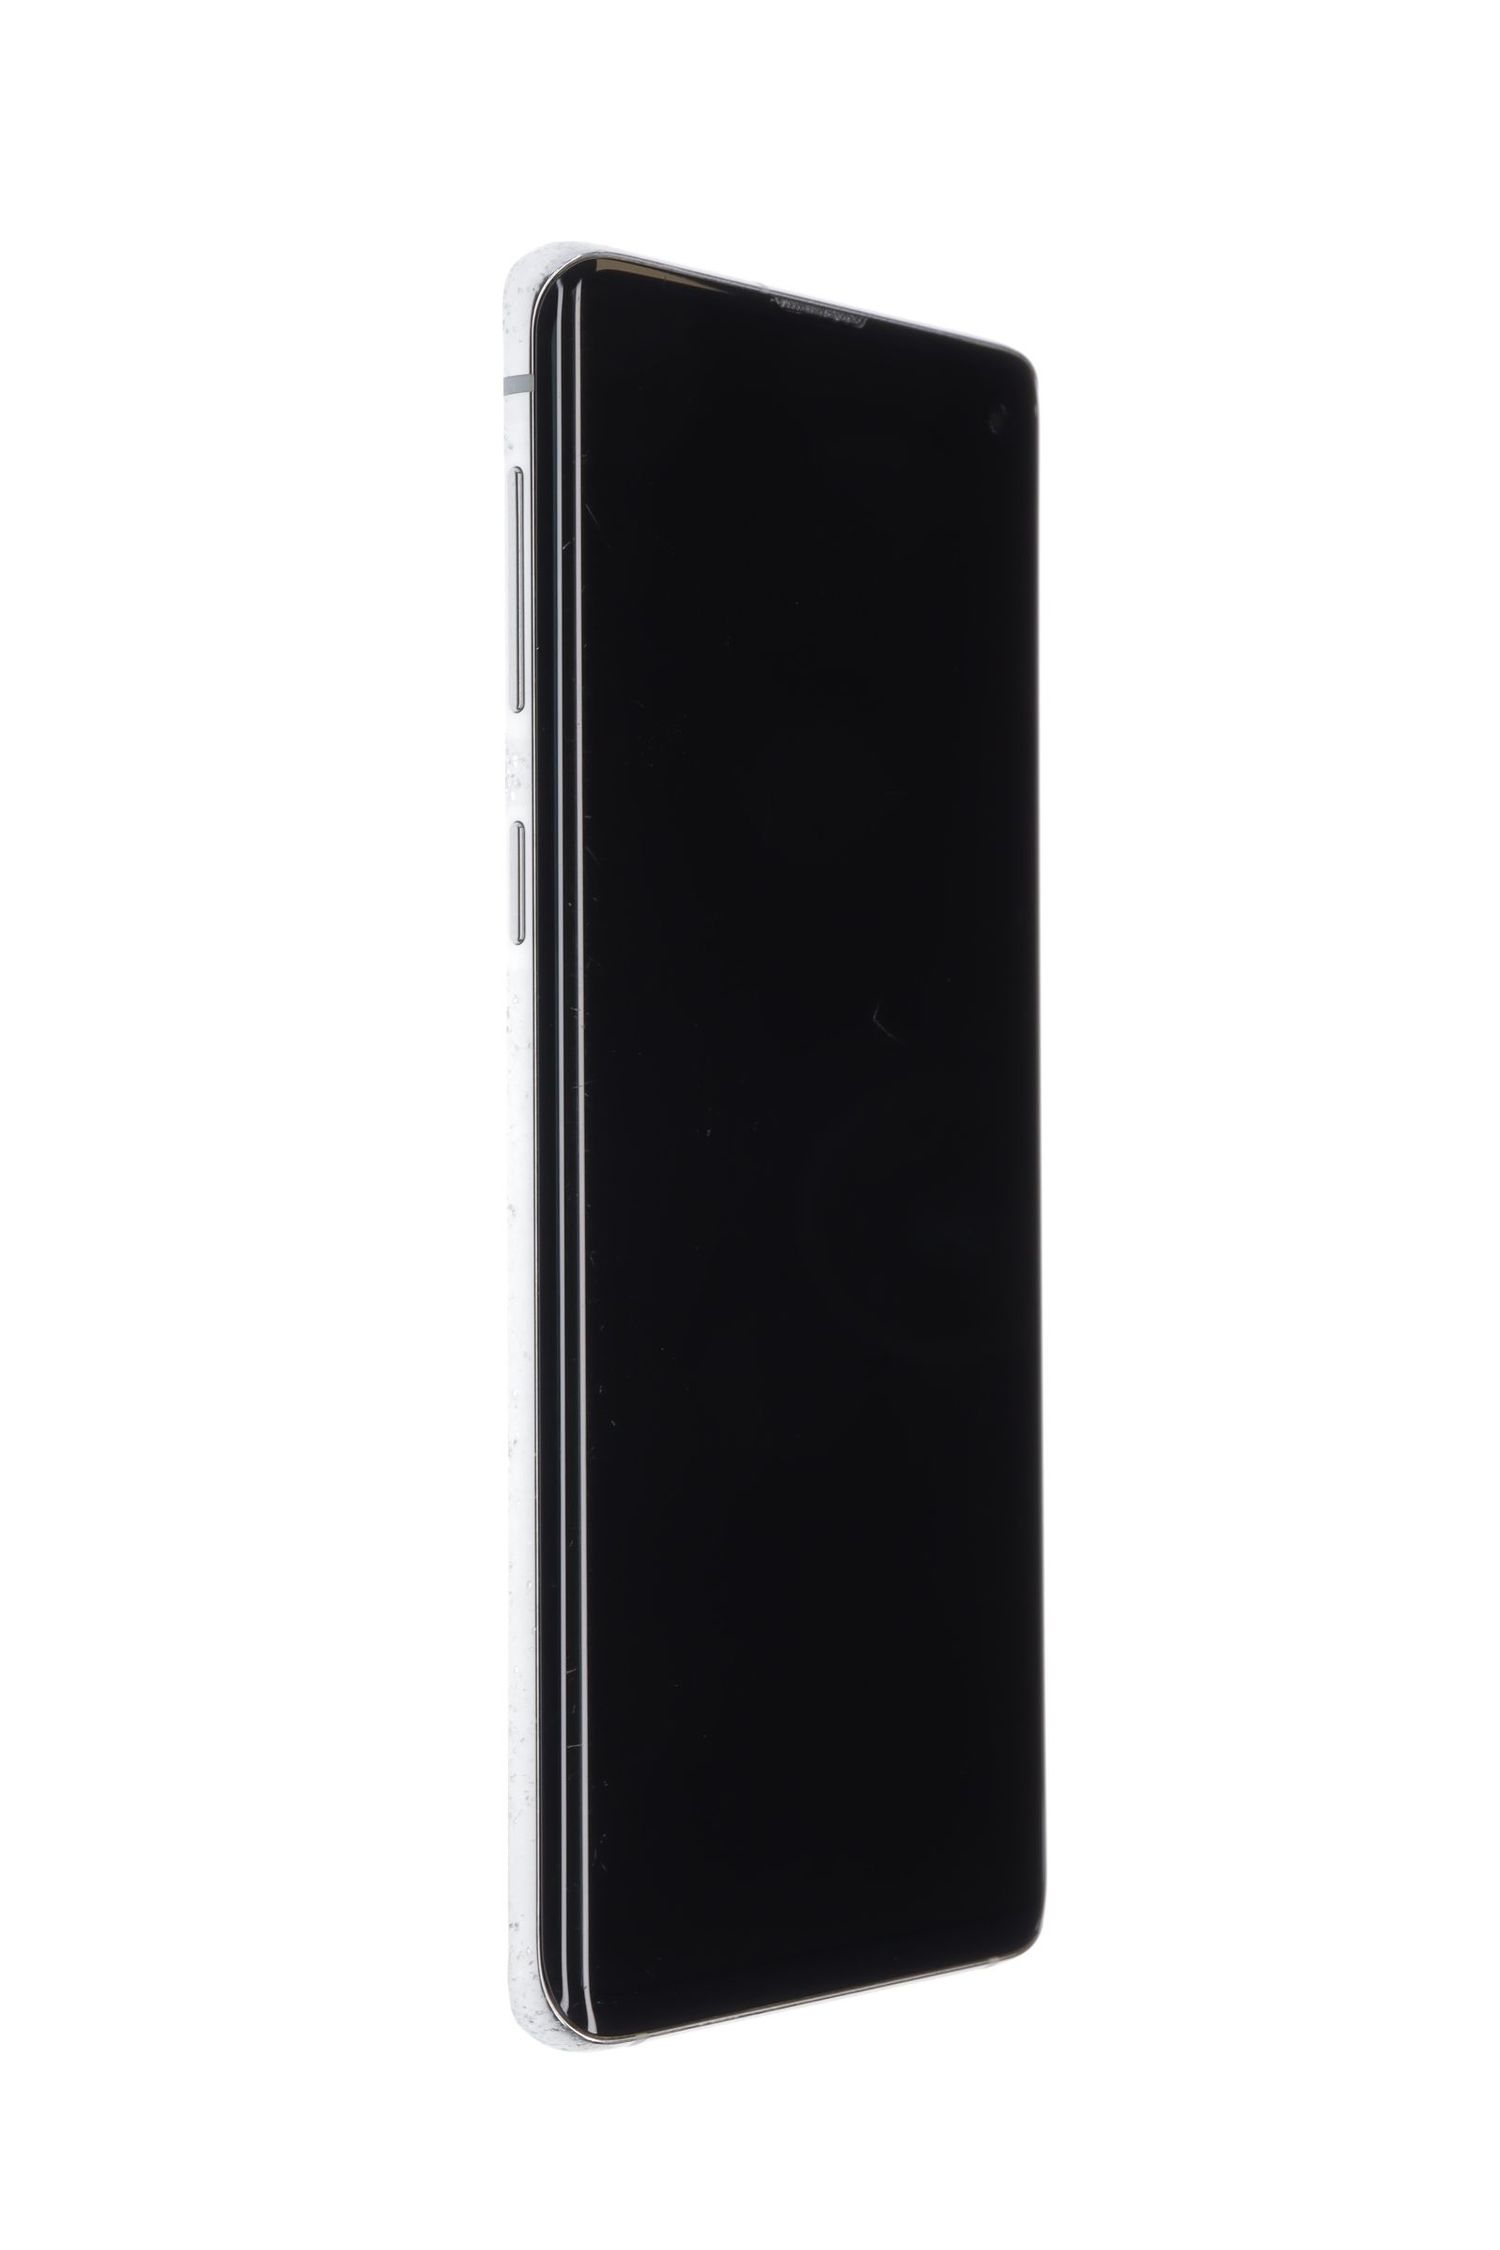 Κινητό τηλέφωνο Samsung Galaxy S10 Dual Sim, Prism White, 128 GB, Bun